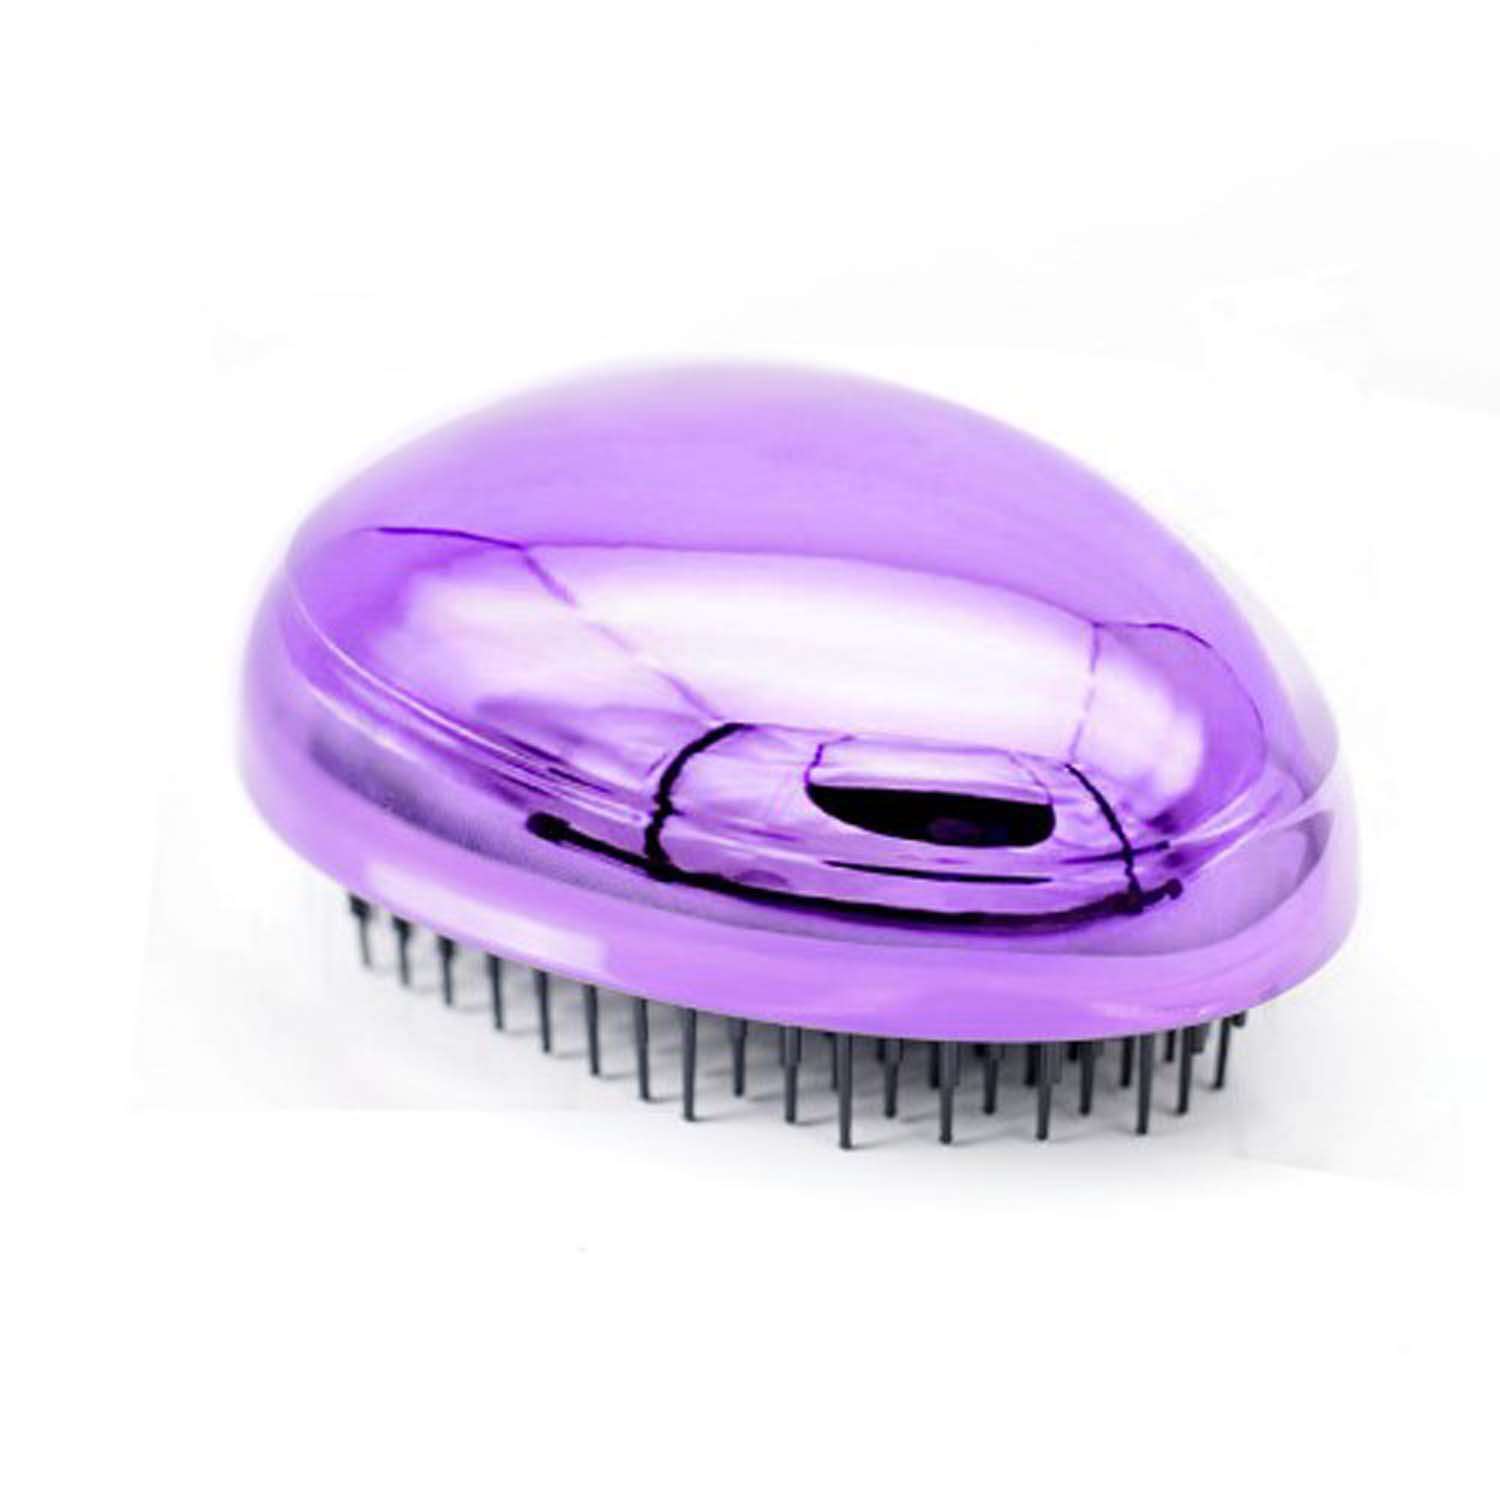 Расческа для волос Beautypedia compact фиолетовая распутывающая - фото 4